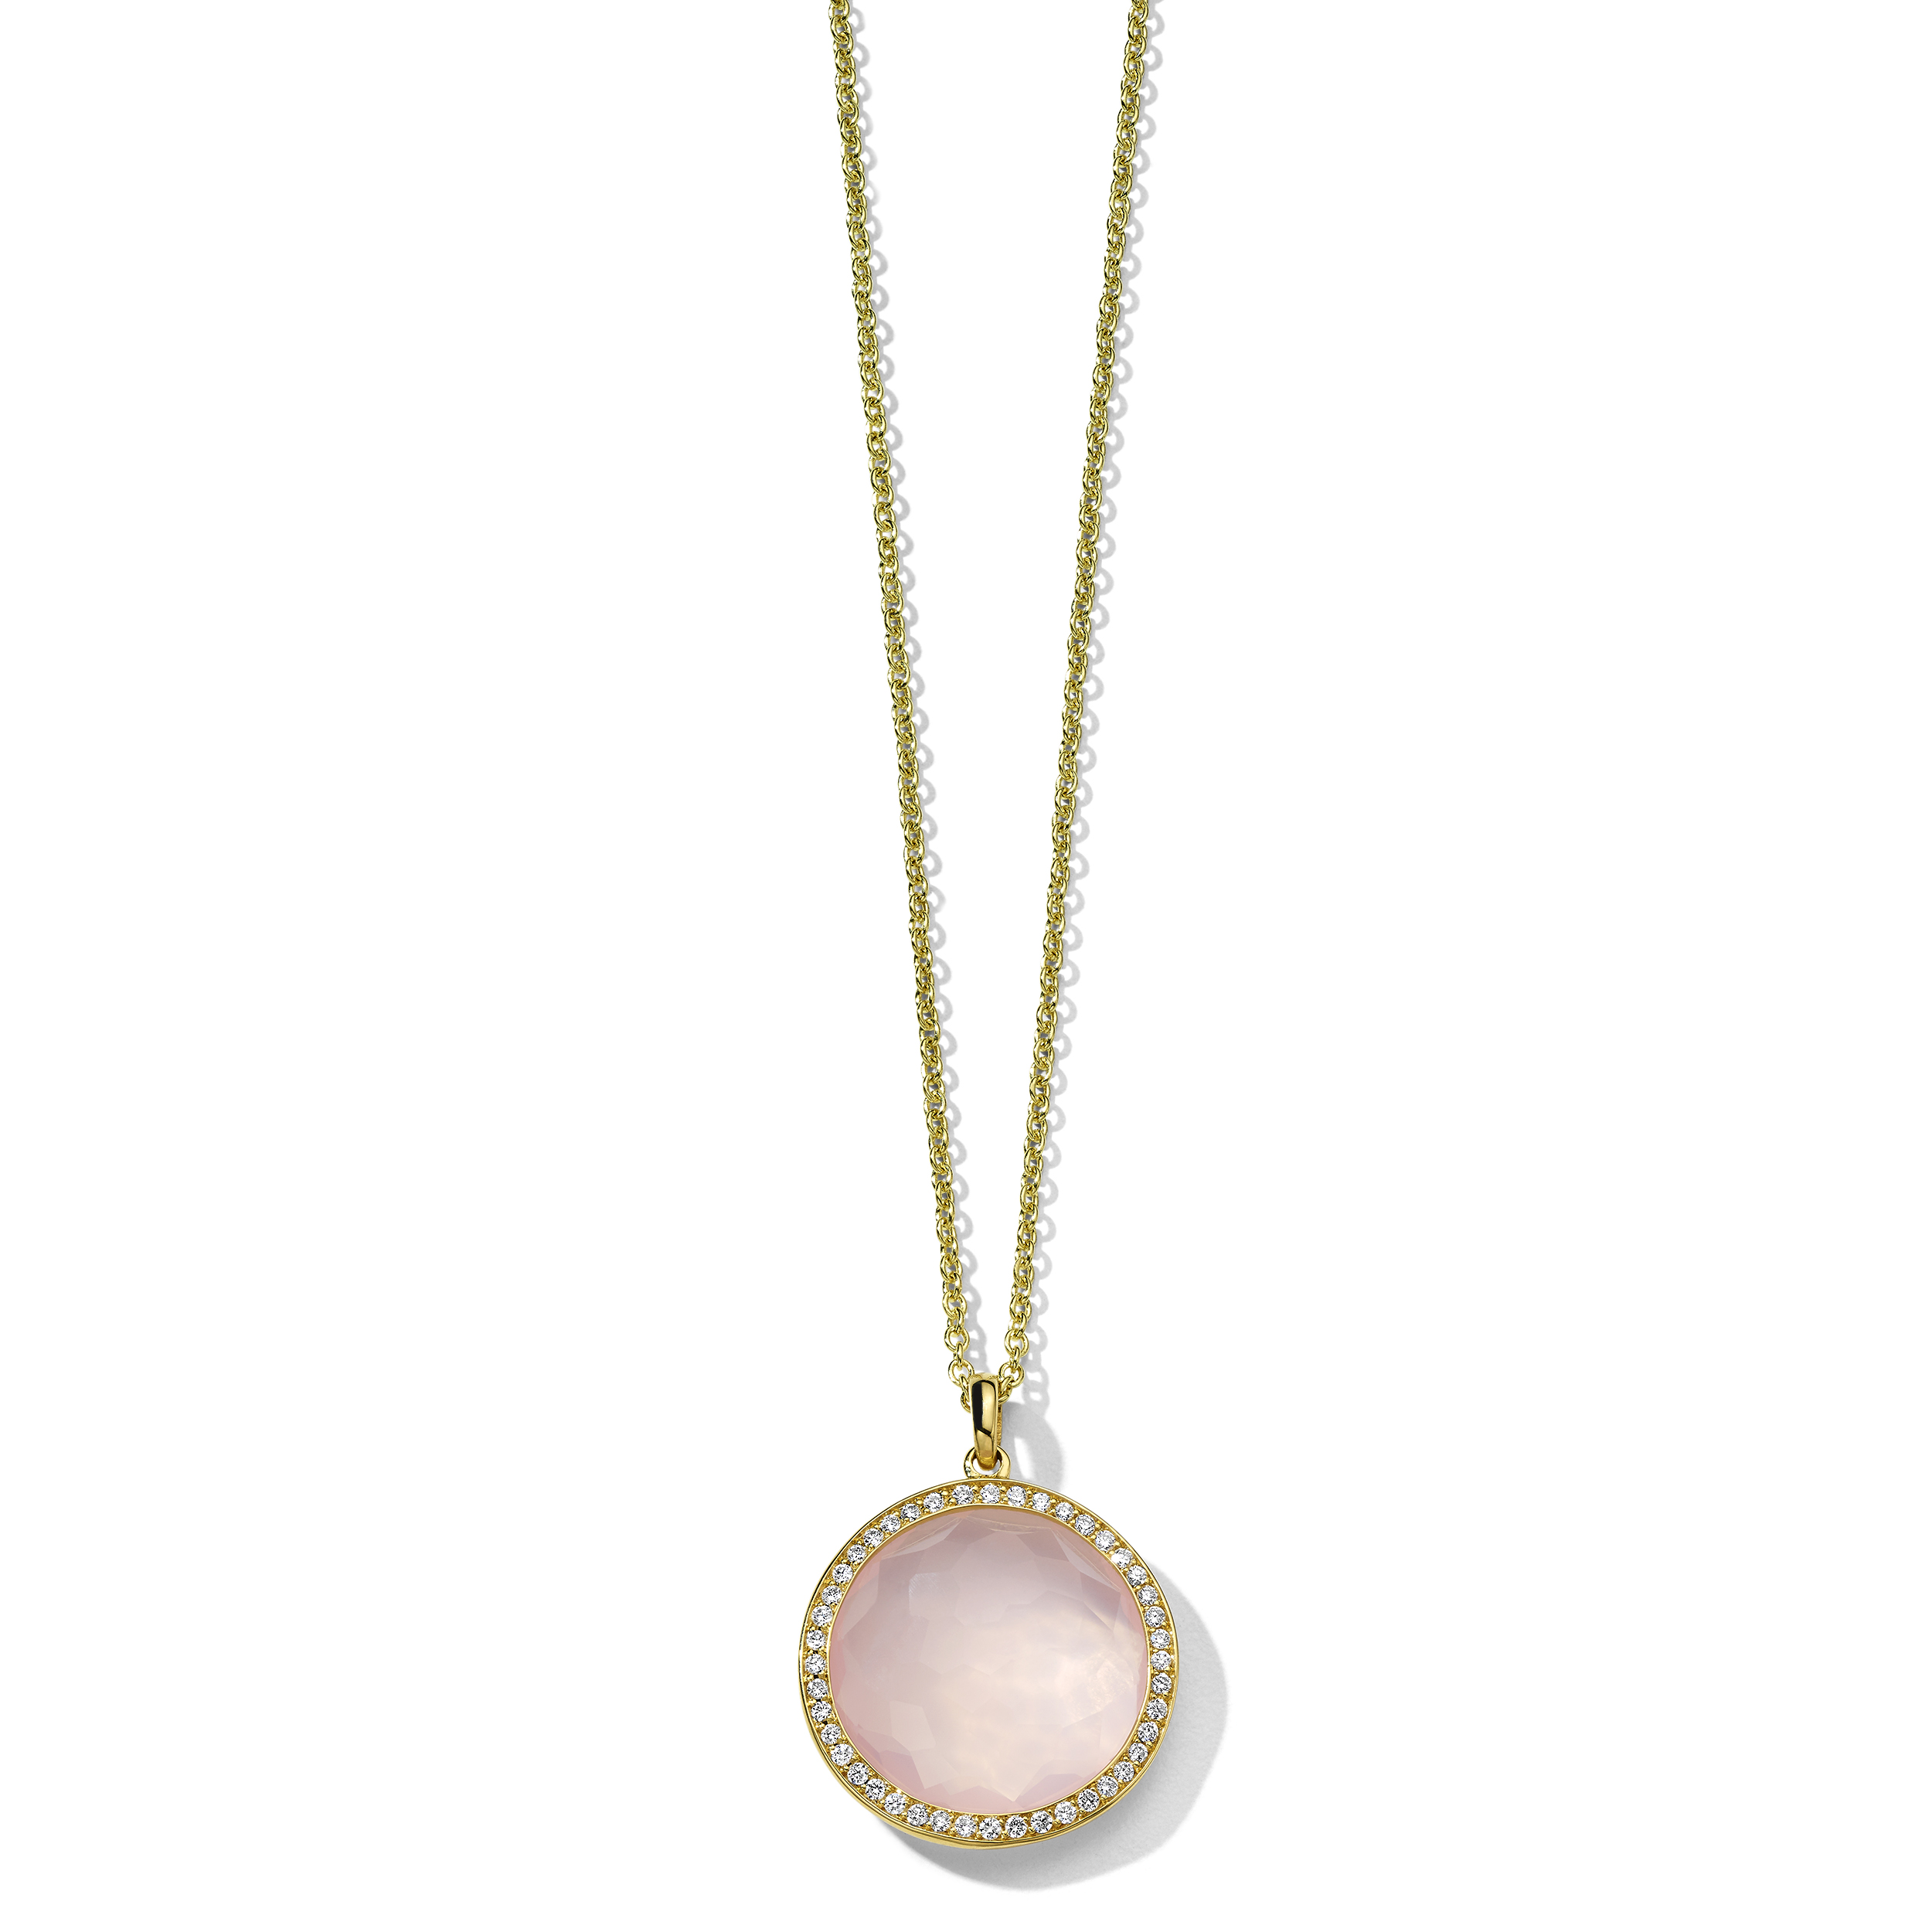 Rose Quartz Medium Pendant Necklace in 18K Gold with Diamonds